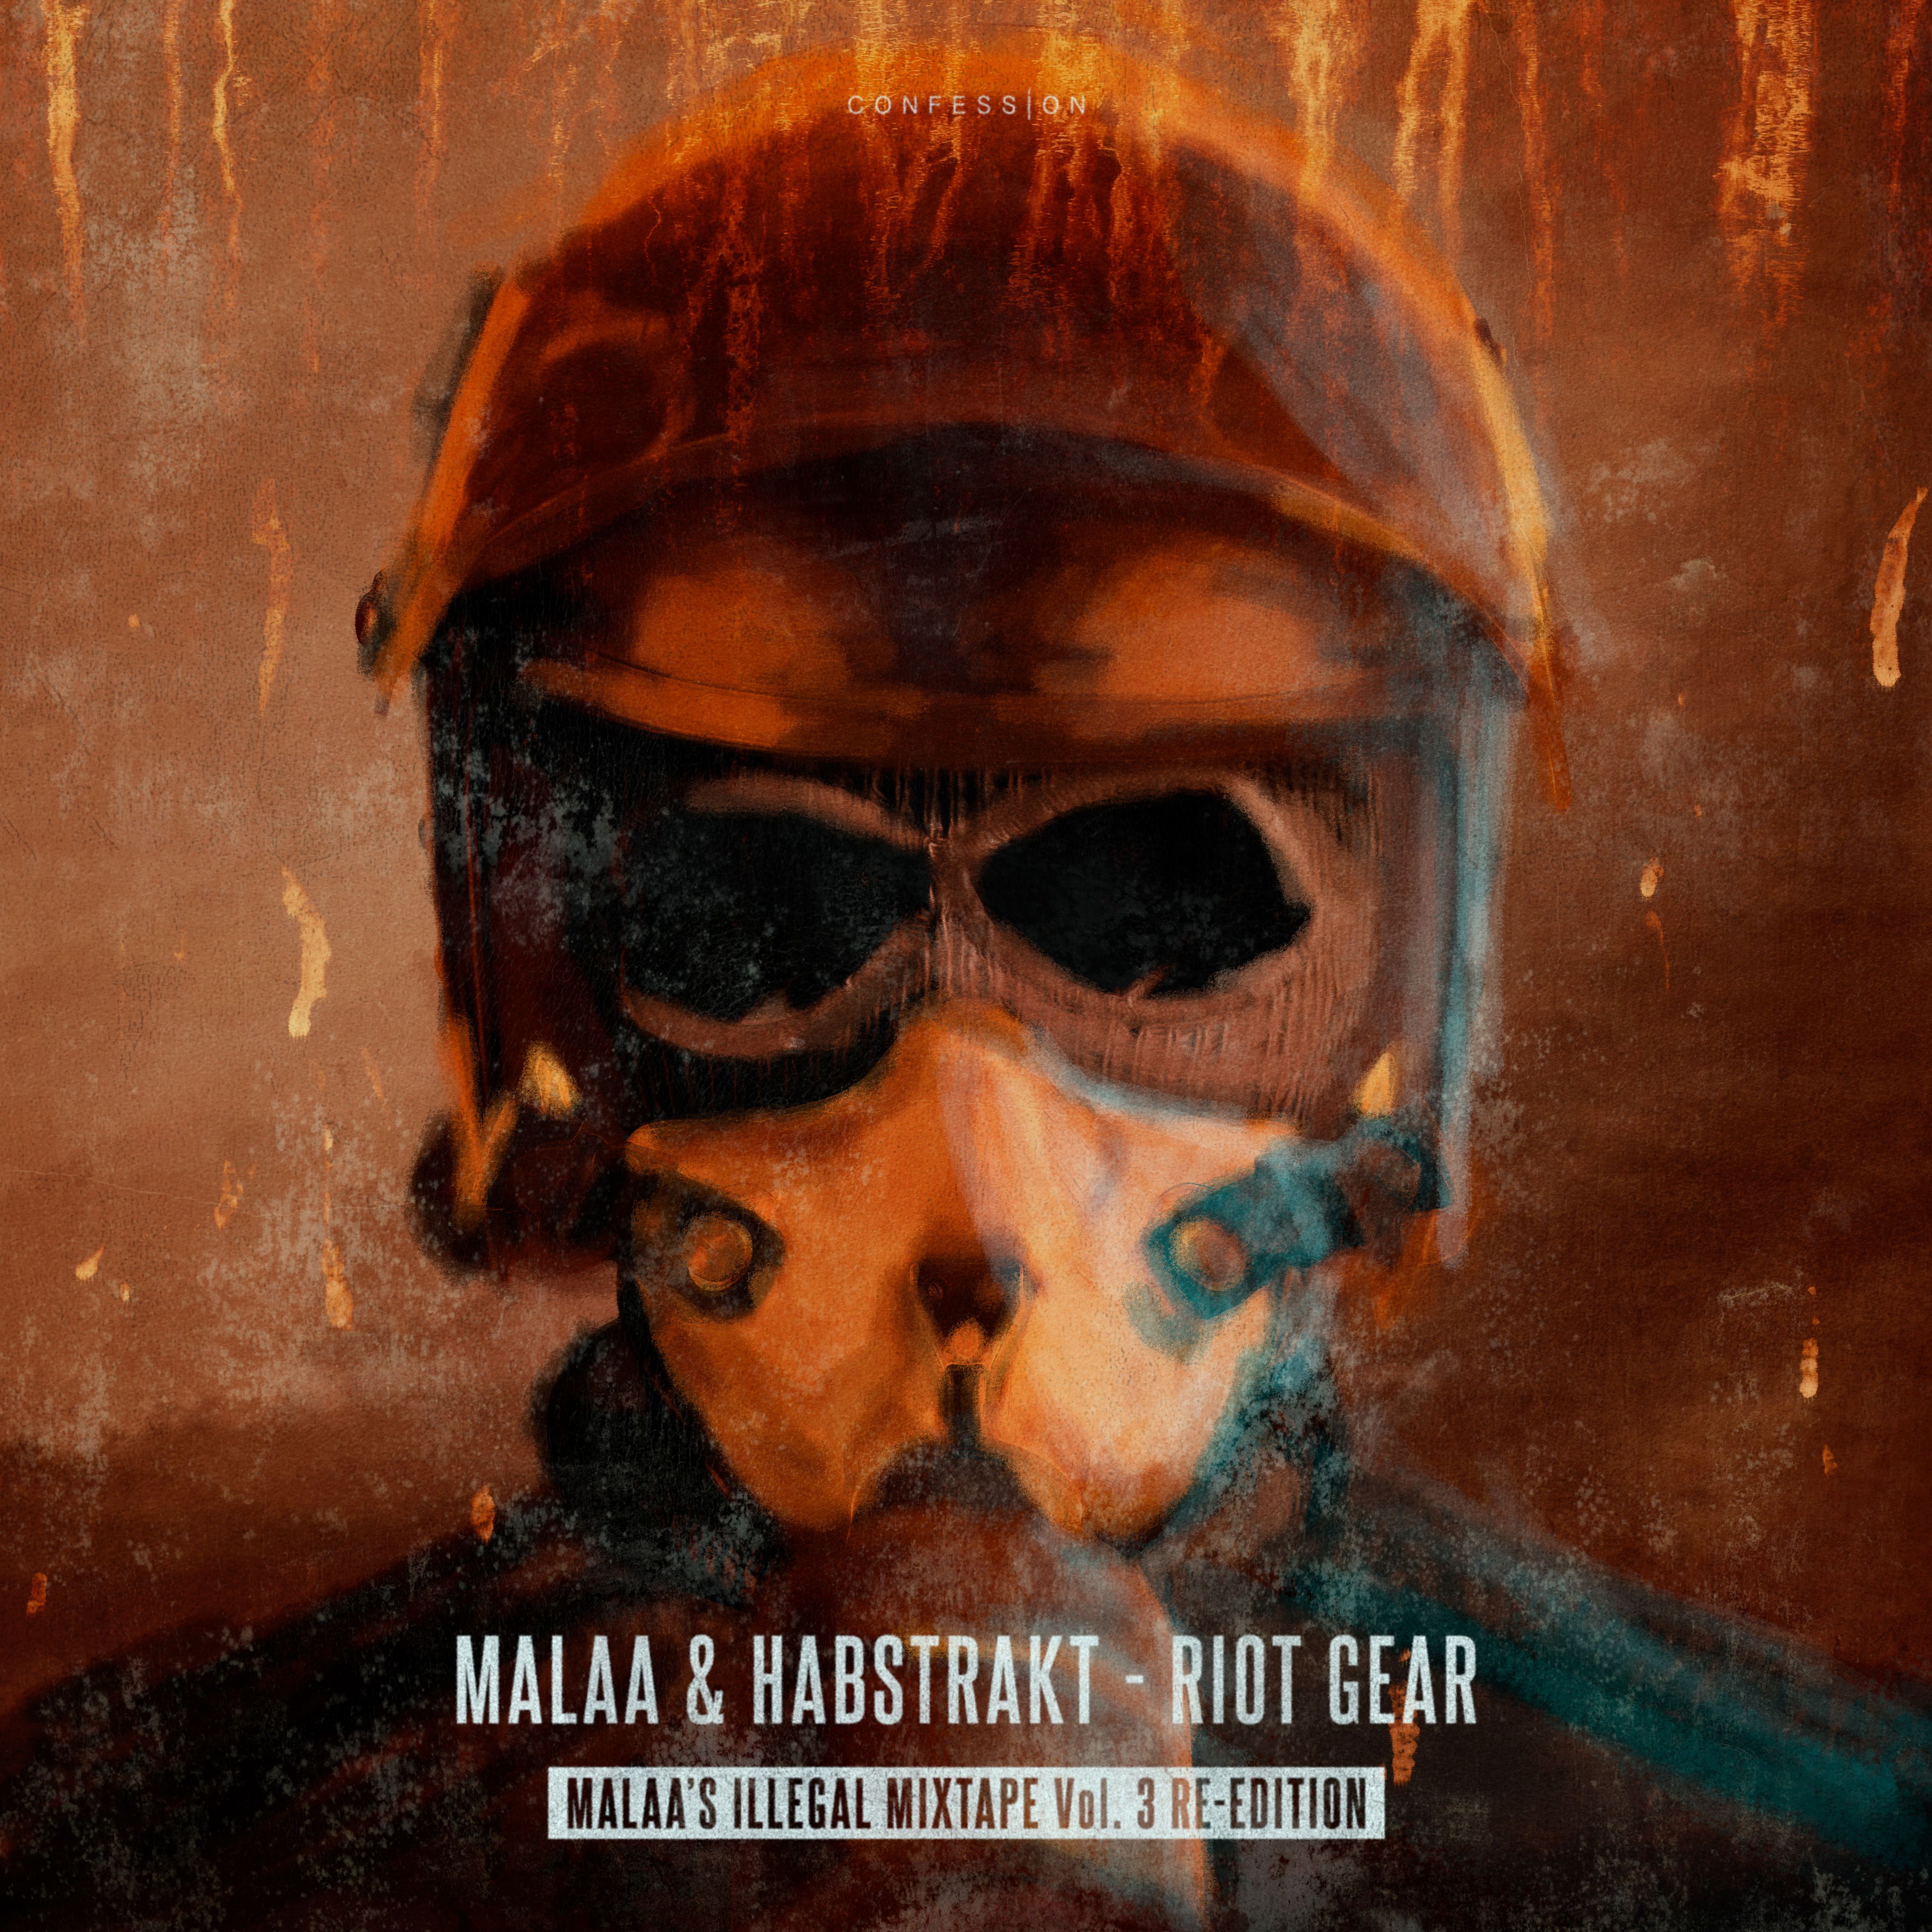 Malaa & Habstrakt - Riot Gear